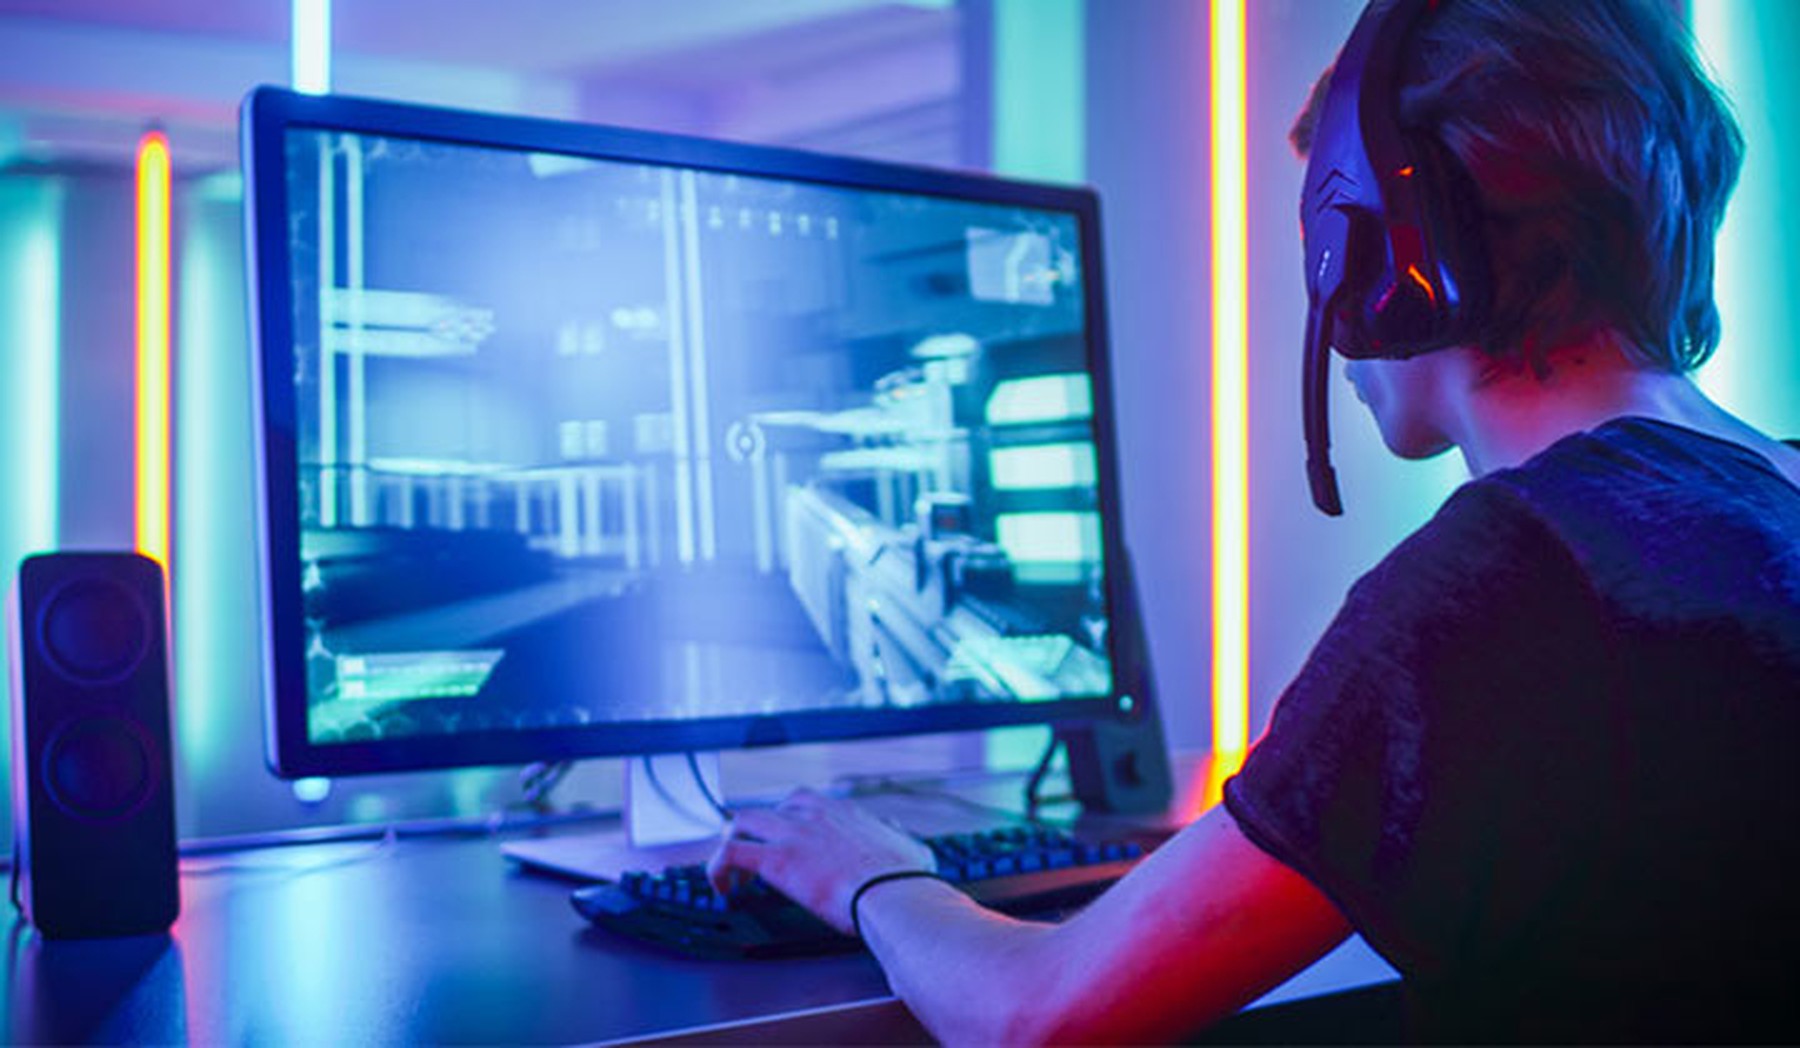 Chico joven con cascos inalámbricos de gamer con micrófono jugando a un vídeojuego en el ordenador